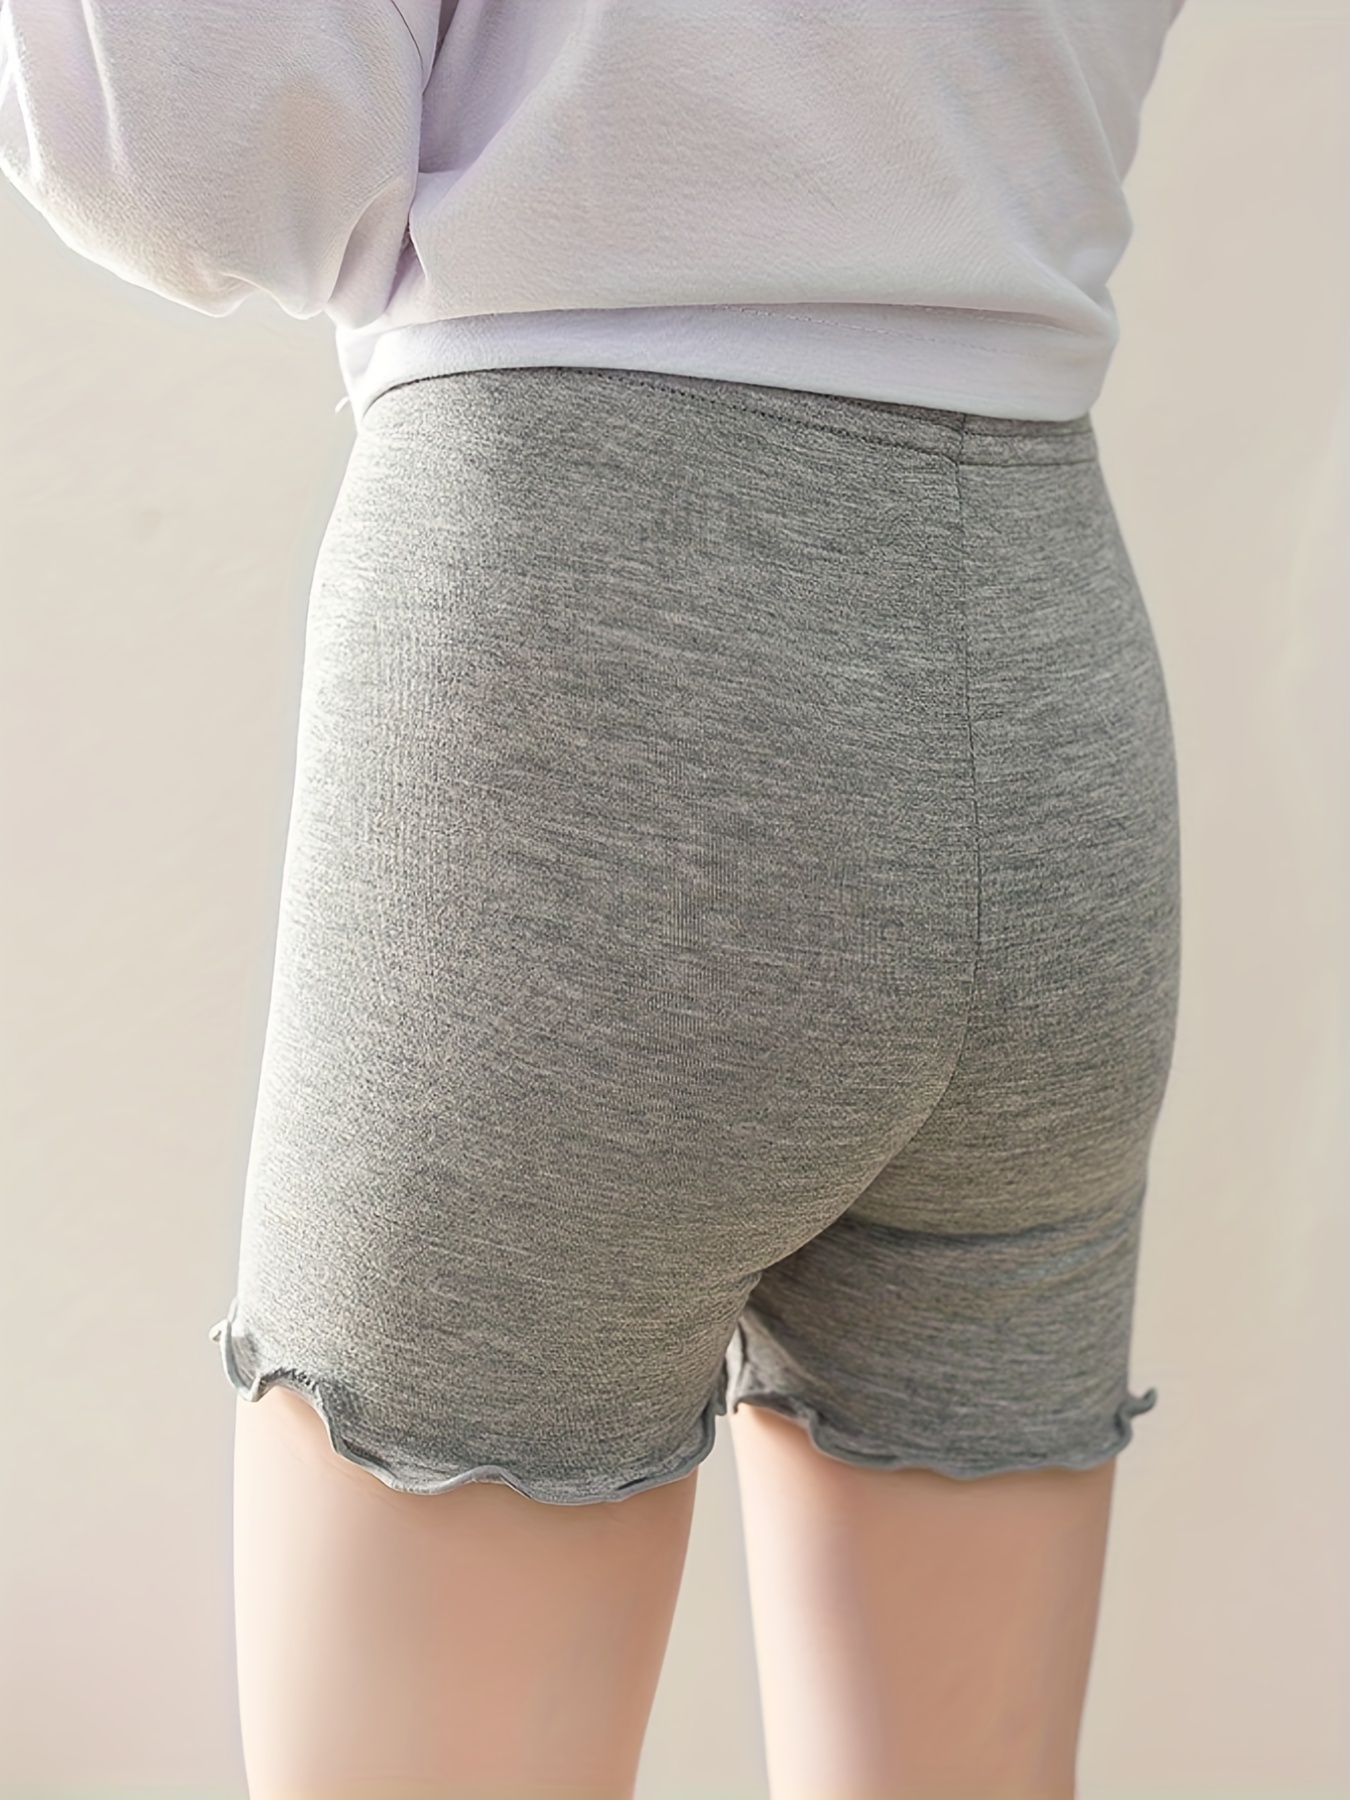 Children Girls Lace Safety Under Pants Skirt Shorts Underwear